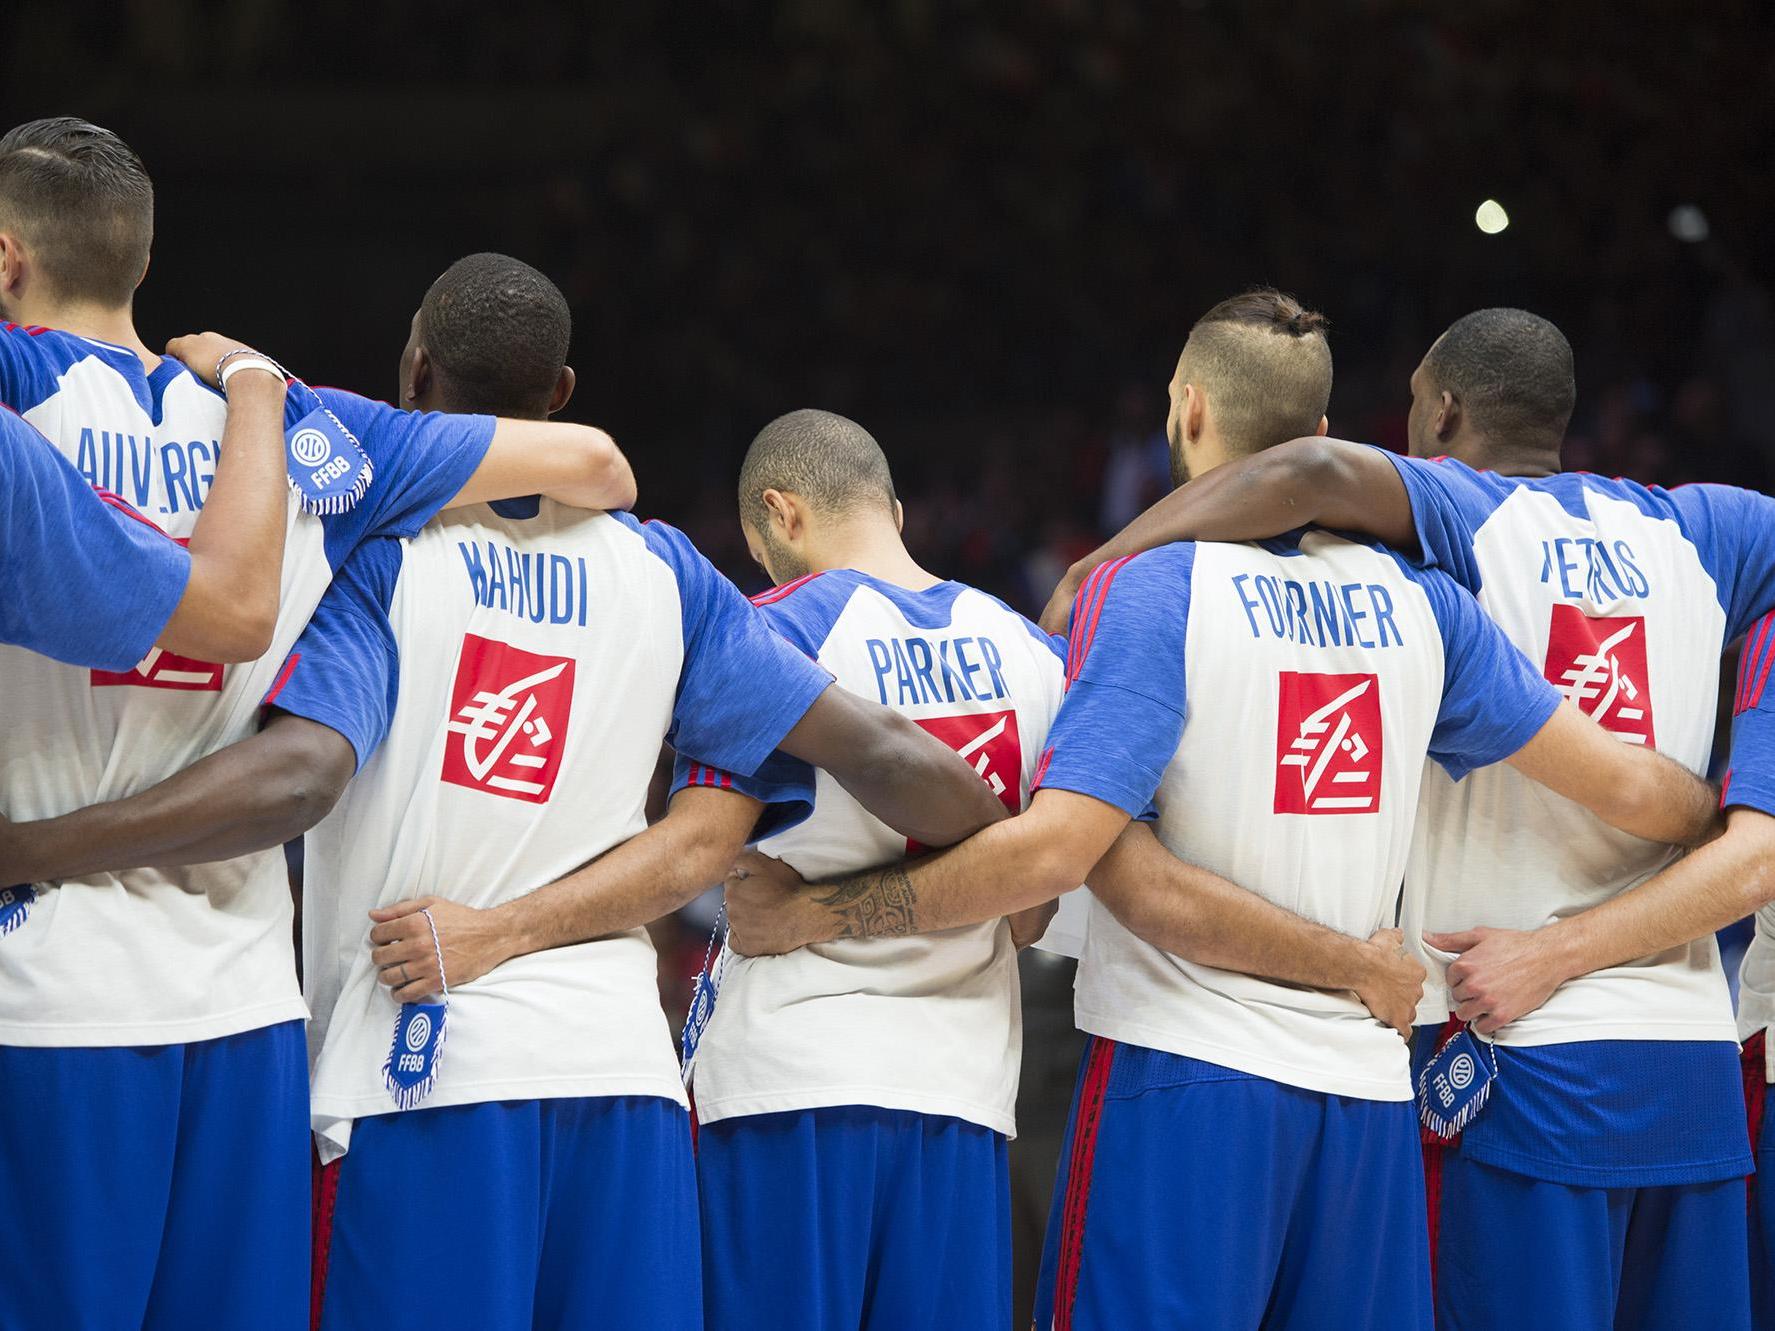 EuroBasket 2015